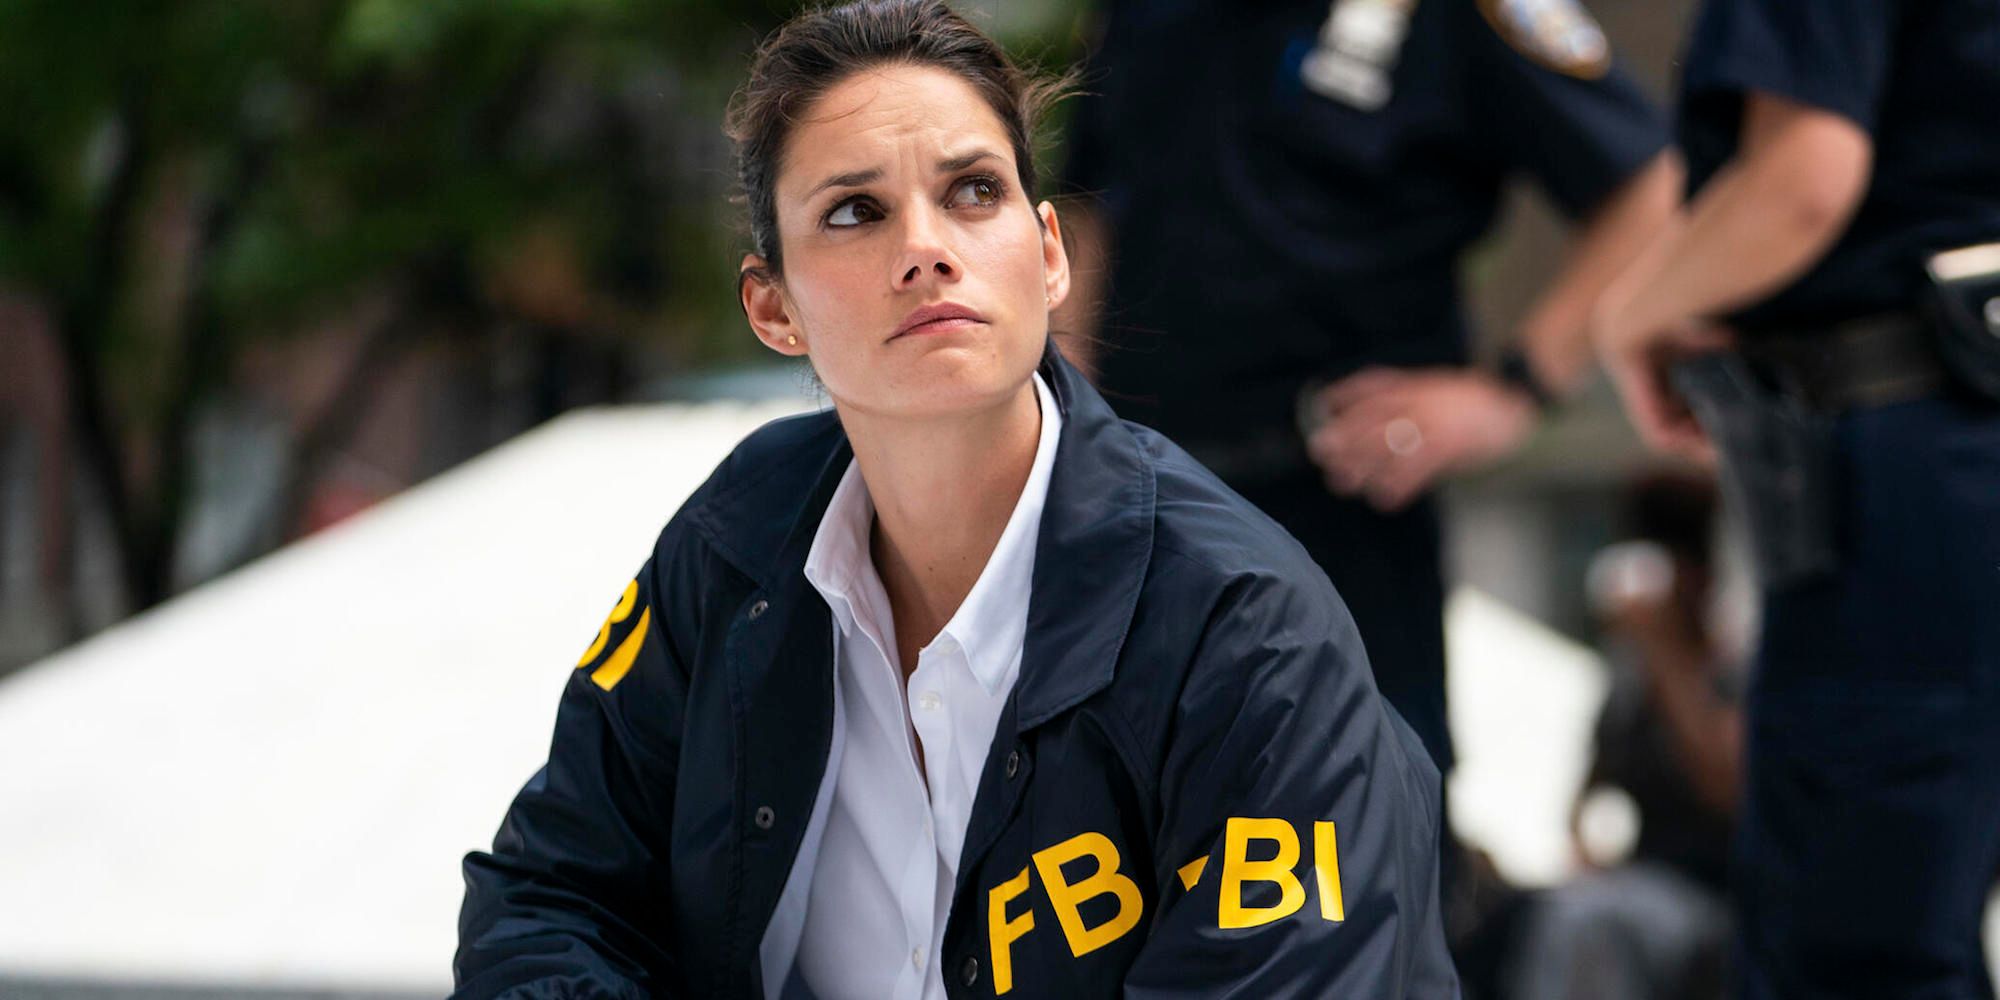 Missy Peregrym in FBI